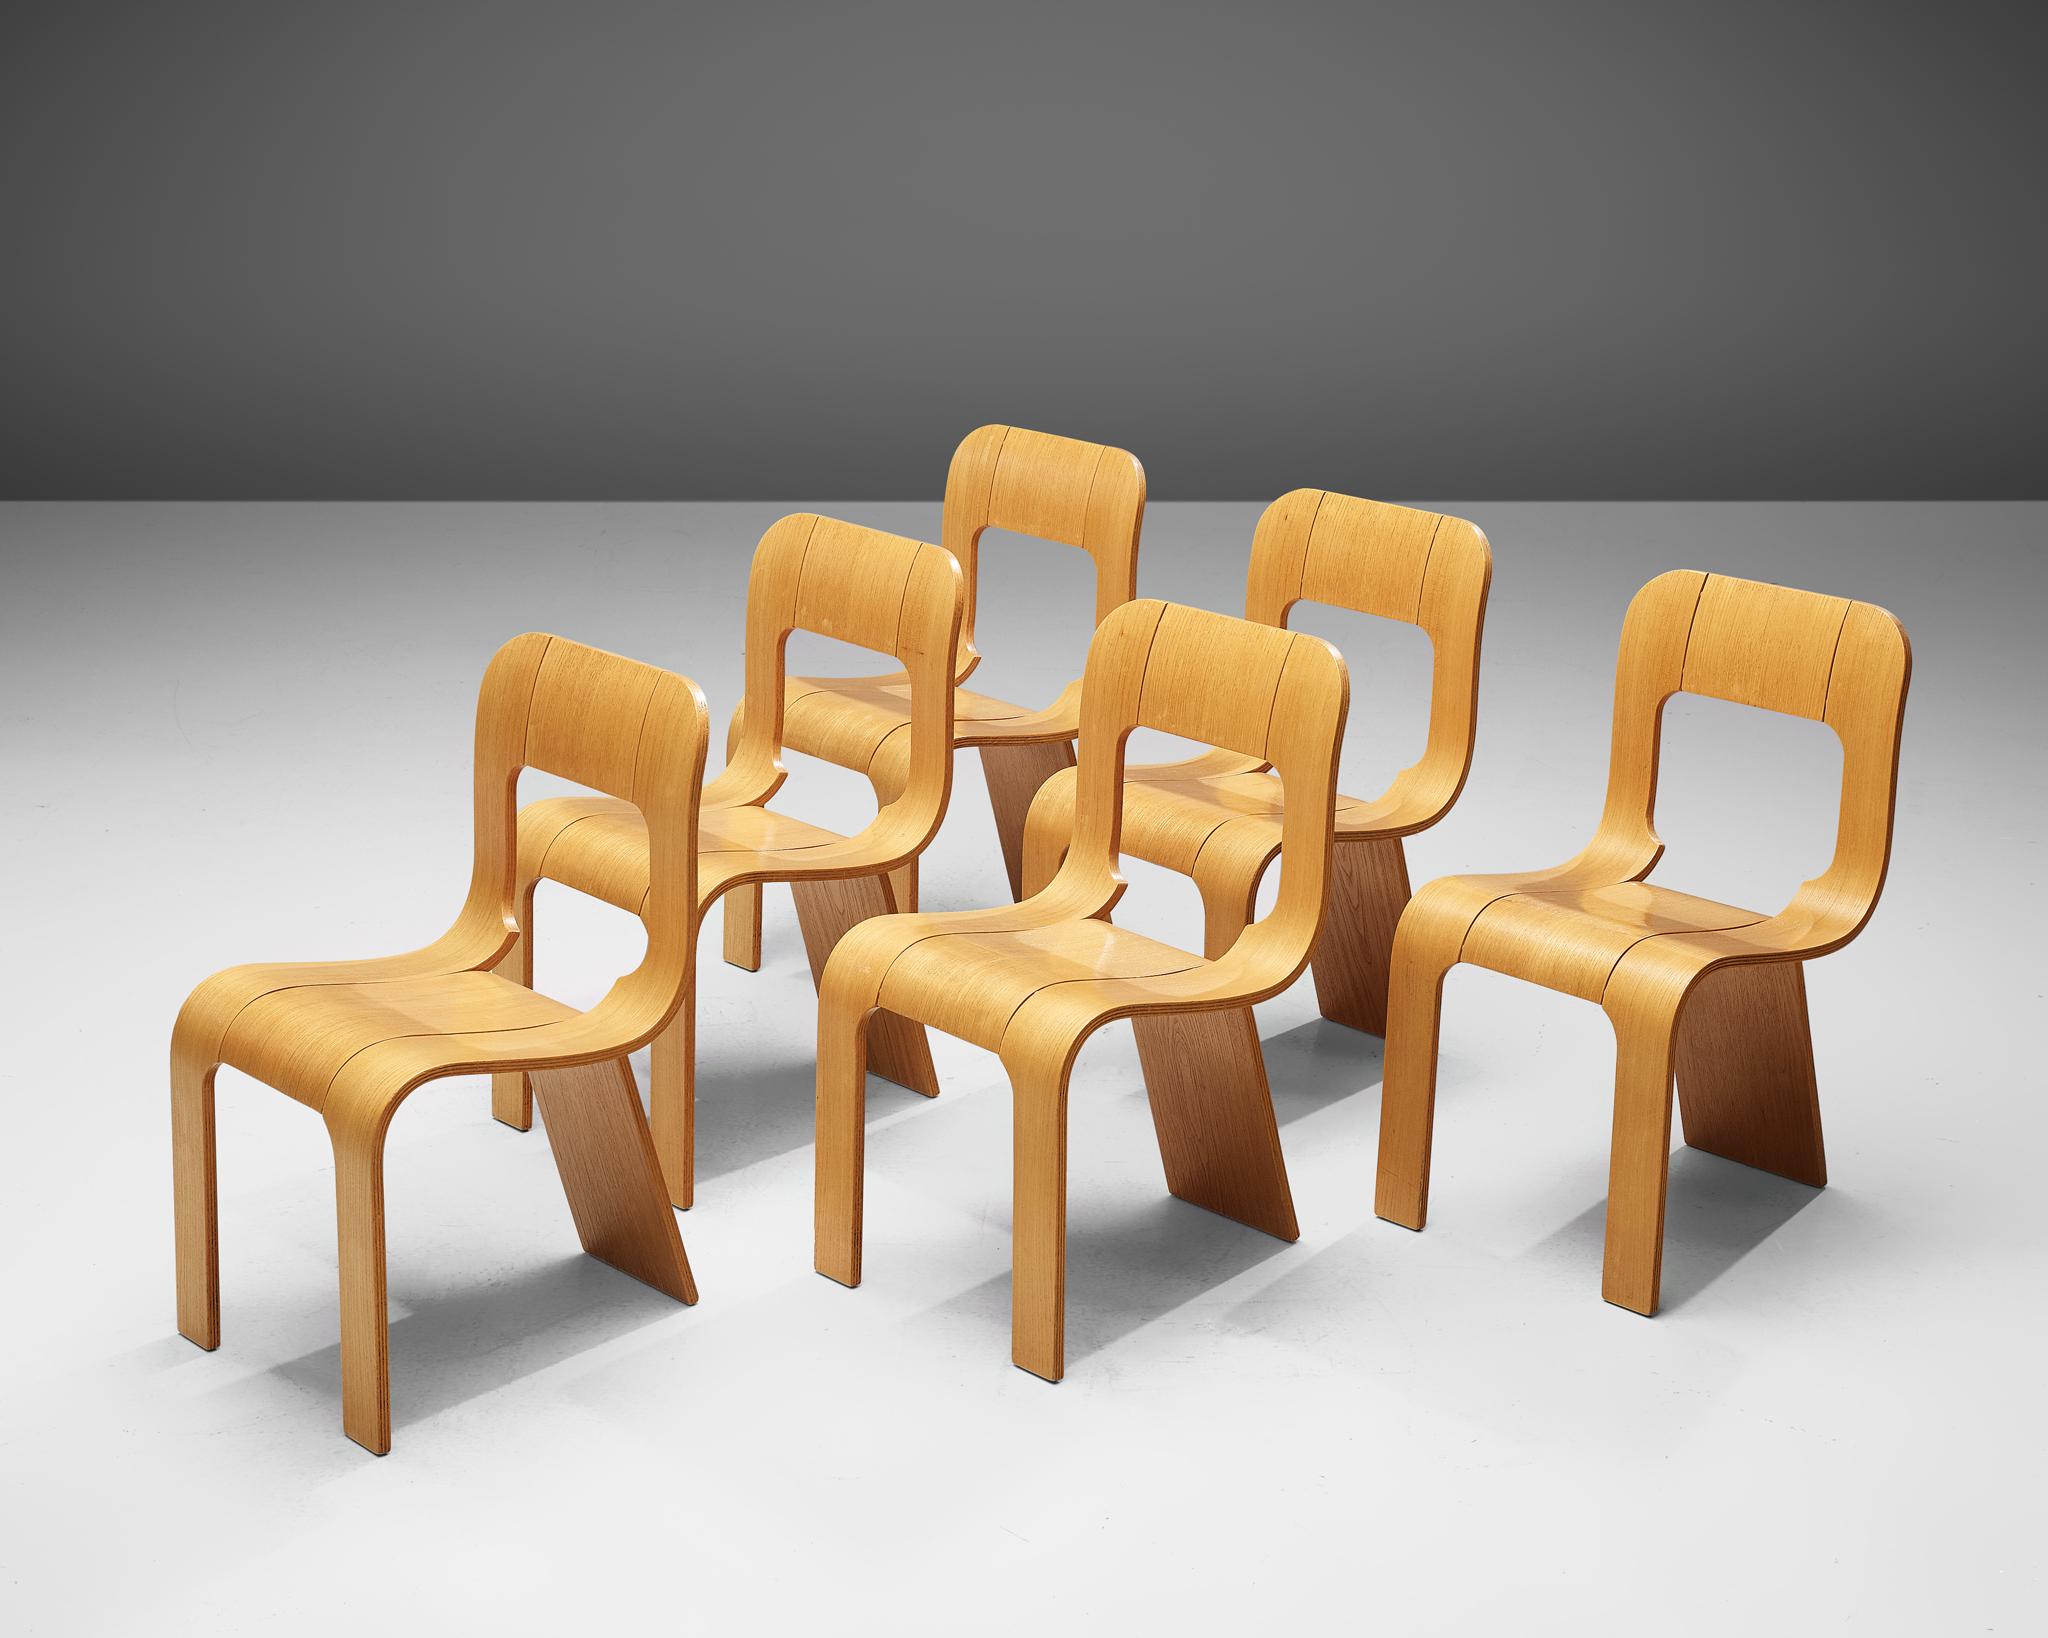 Gigi Sabadin für Stilwood, Satz von sechs Stühlen, Esche Sperrholz, Italien, 1970er Jahre.

Diese Stühle sind ein origineller Entwurf des Italieners Gigi Sabadin und bestehen aus gebogenem Eschen-Sperrholz mit einer furnierten Oberfläche. Das